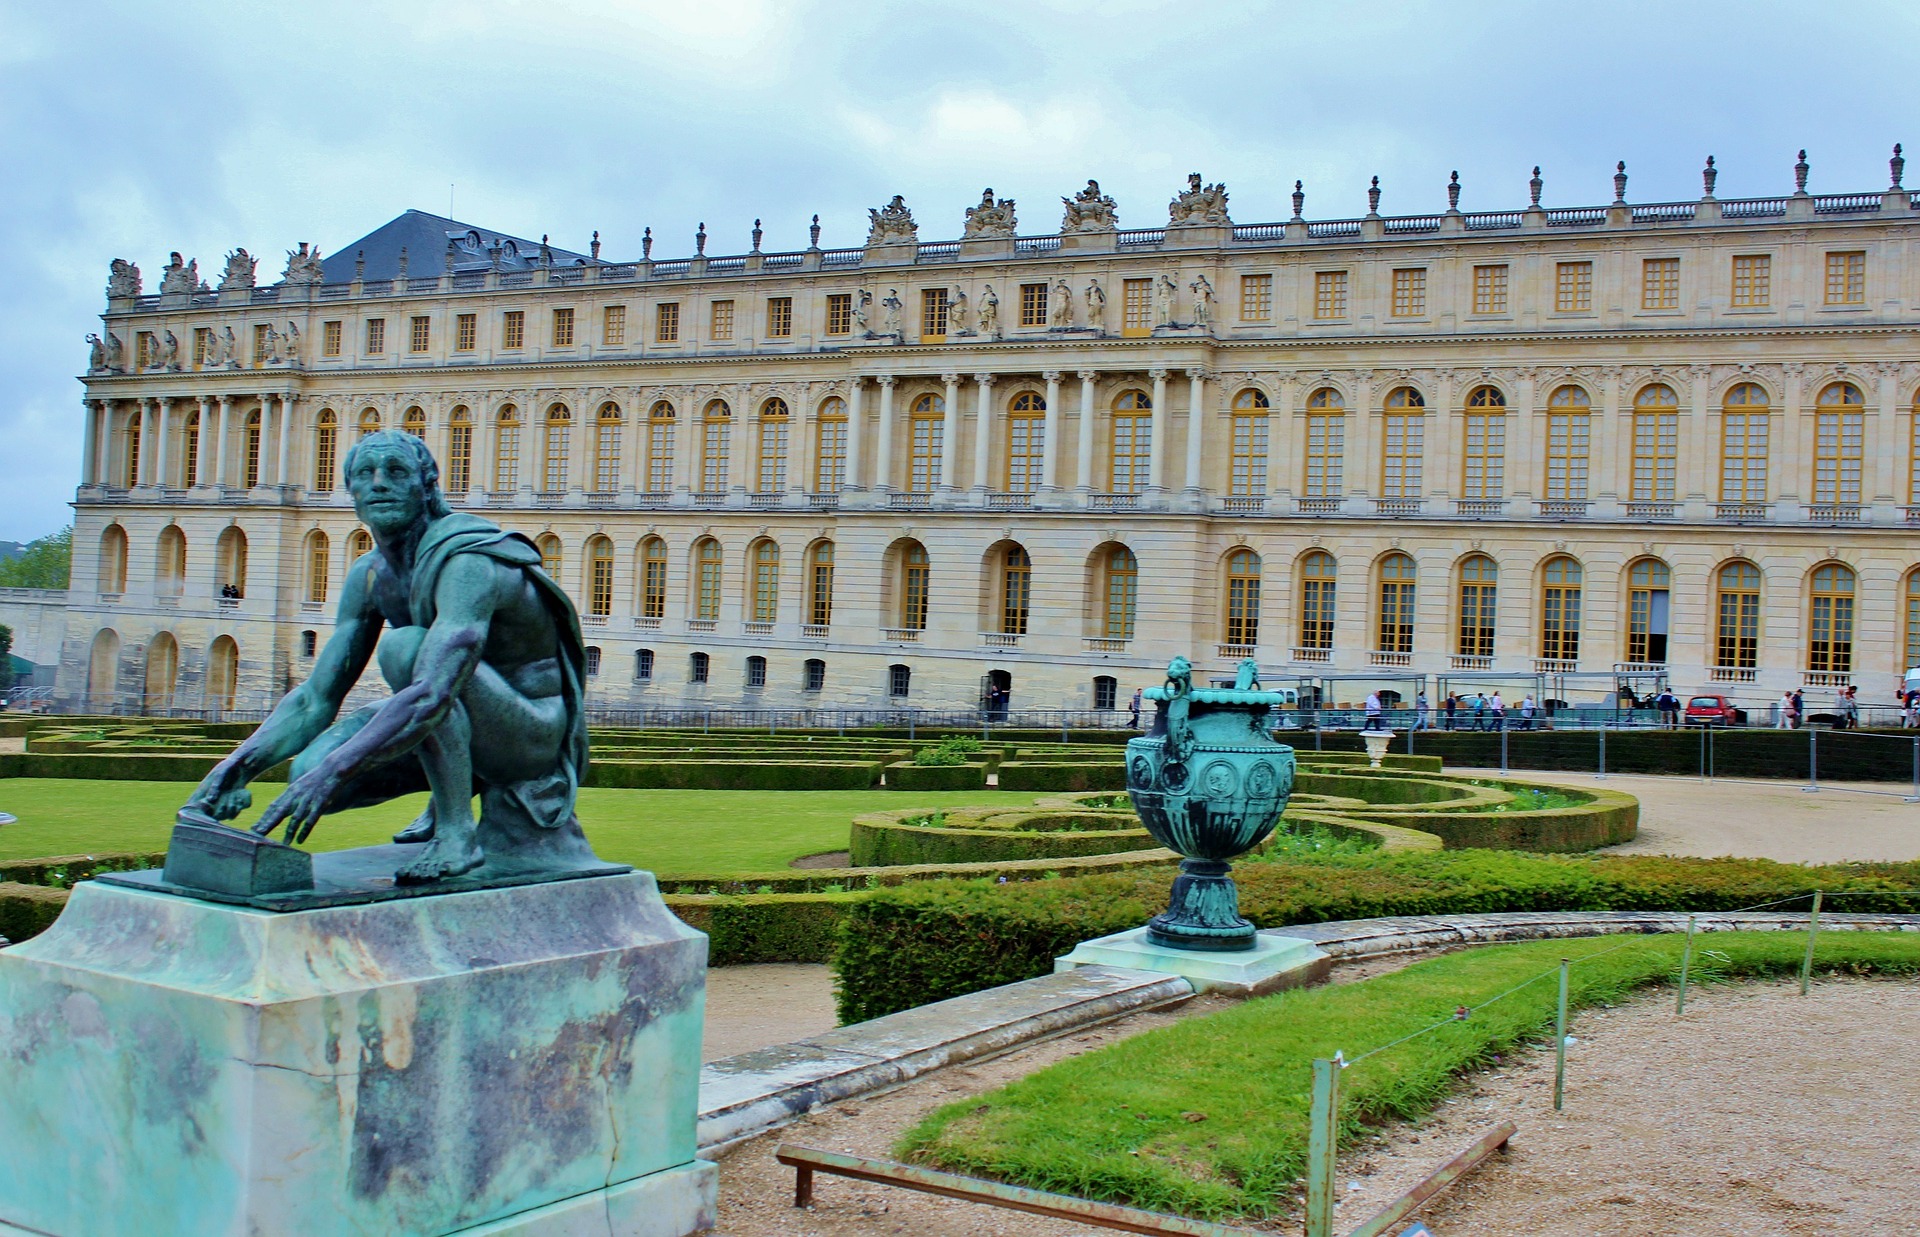 Gardens of Versailles Day Trip